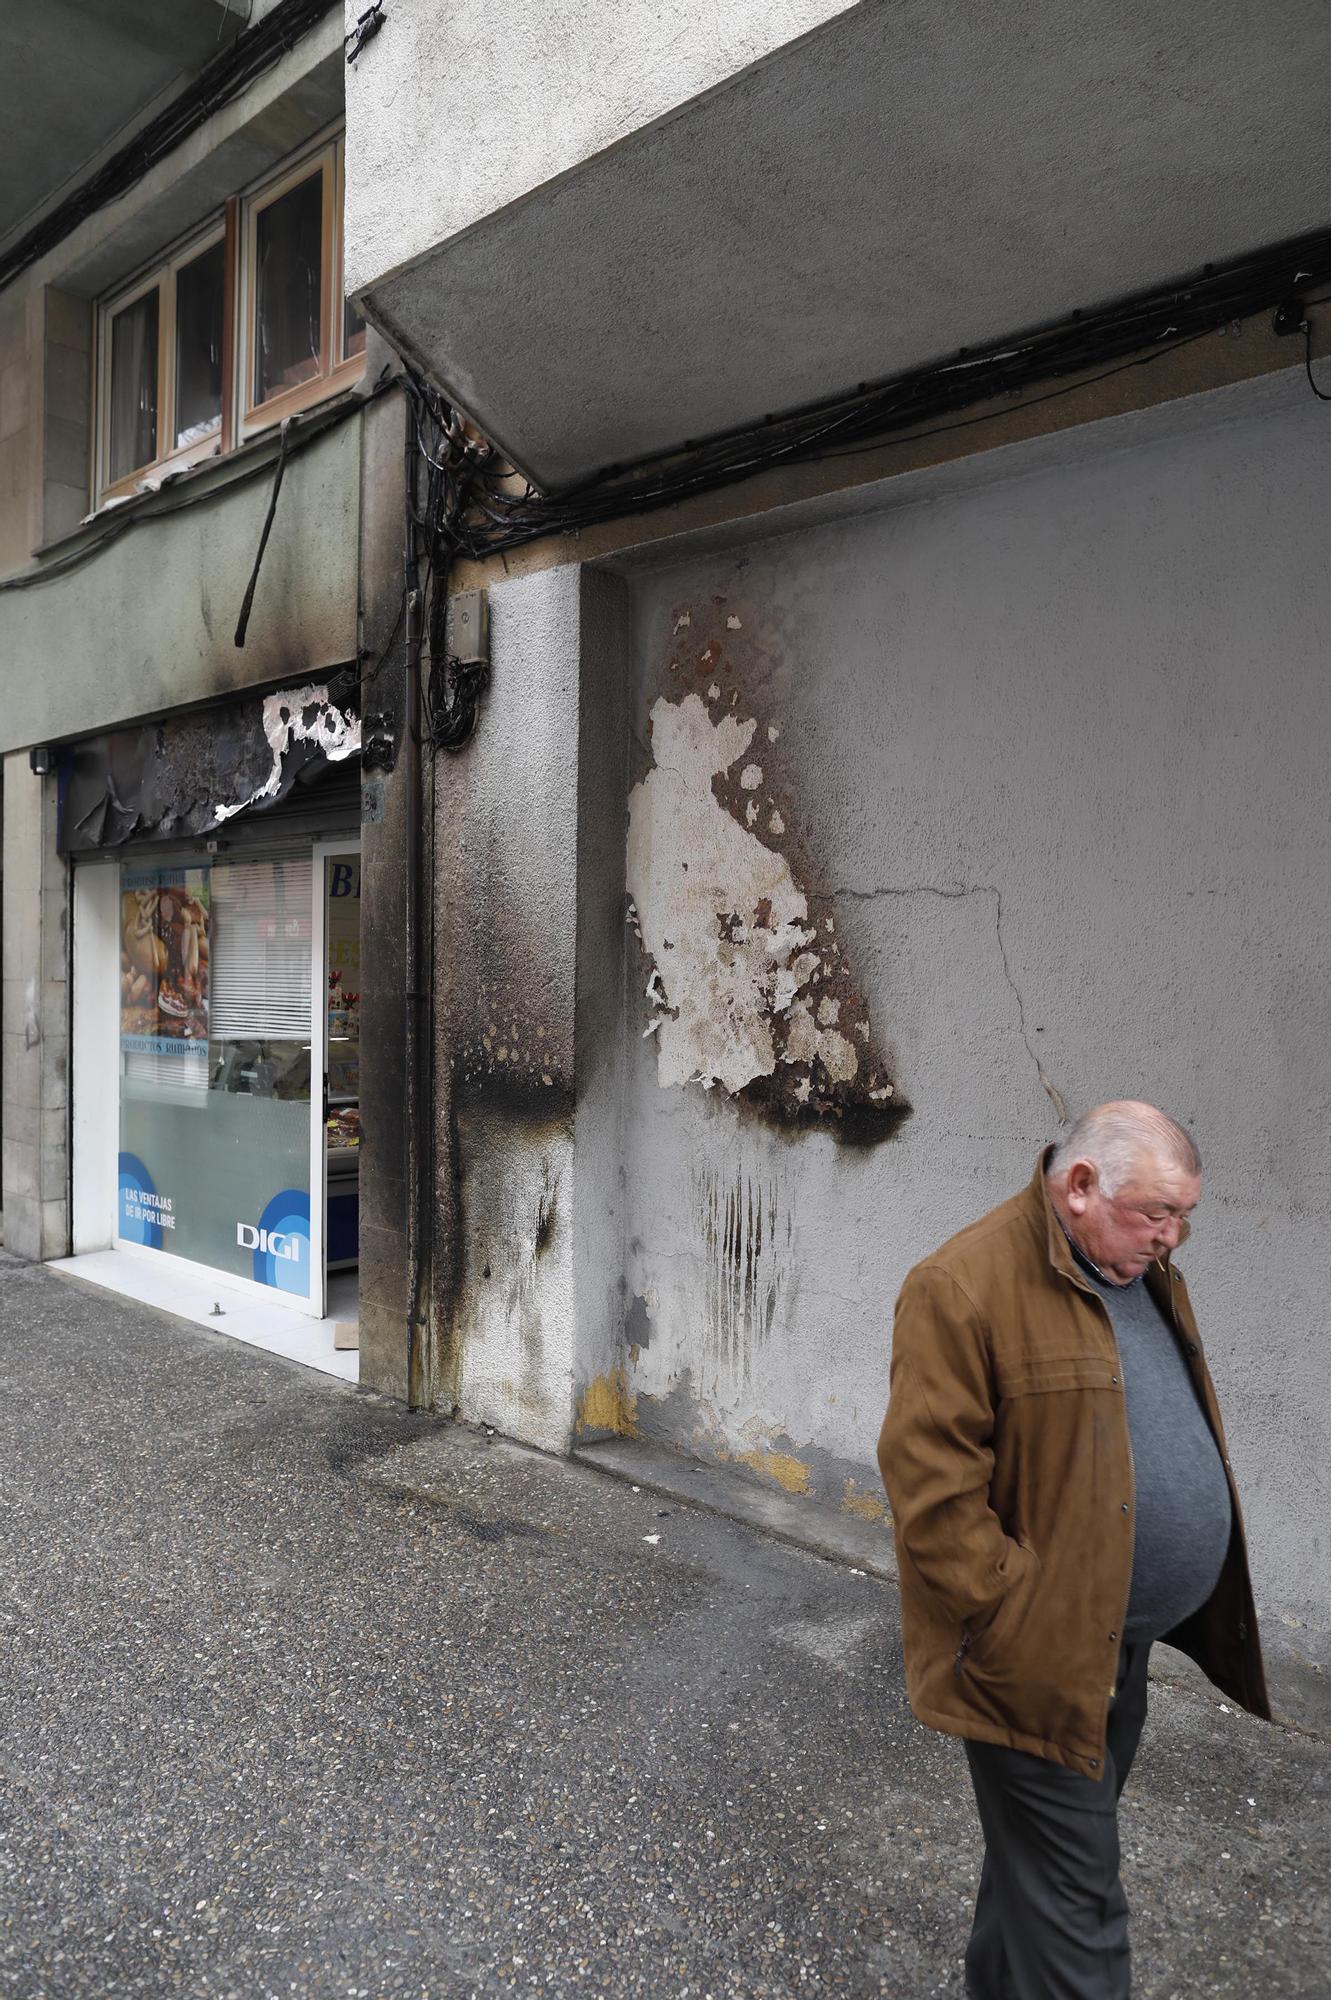 Un incendi de contenidors a Girona acaba afectant tres motos i tendals de botigues